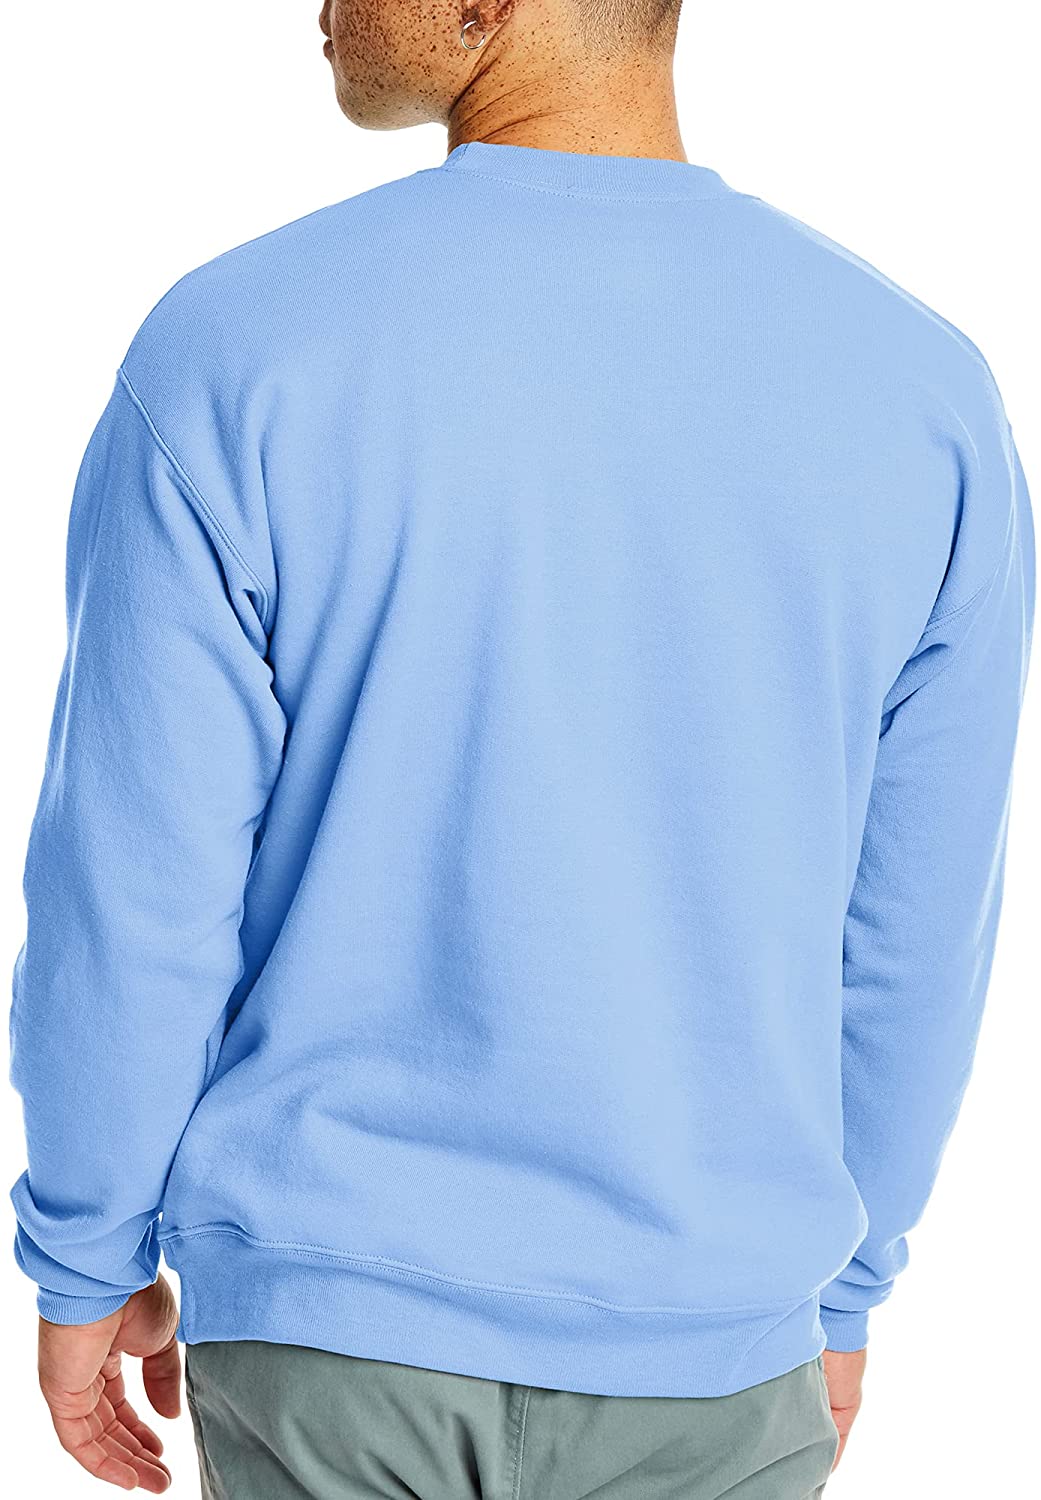 Hanes Men's EcoSmart Sweatshirt